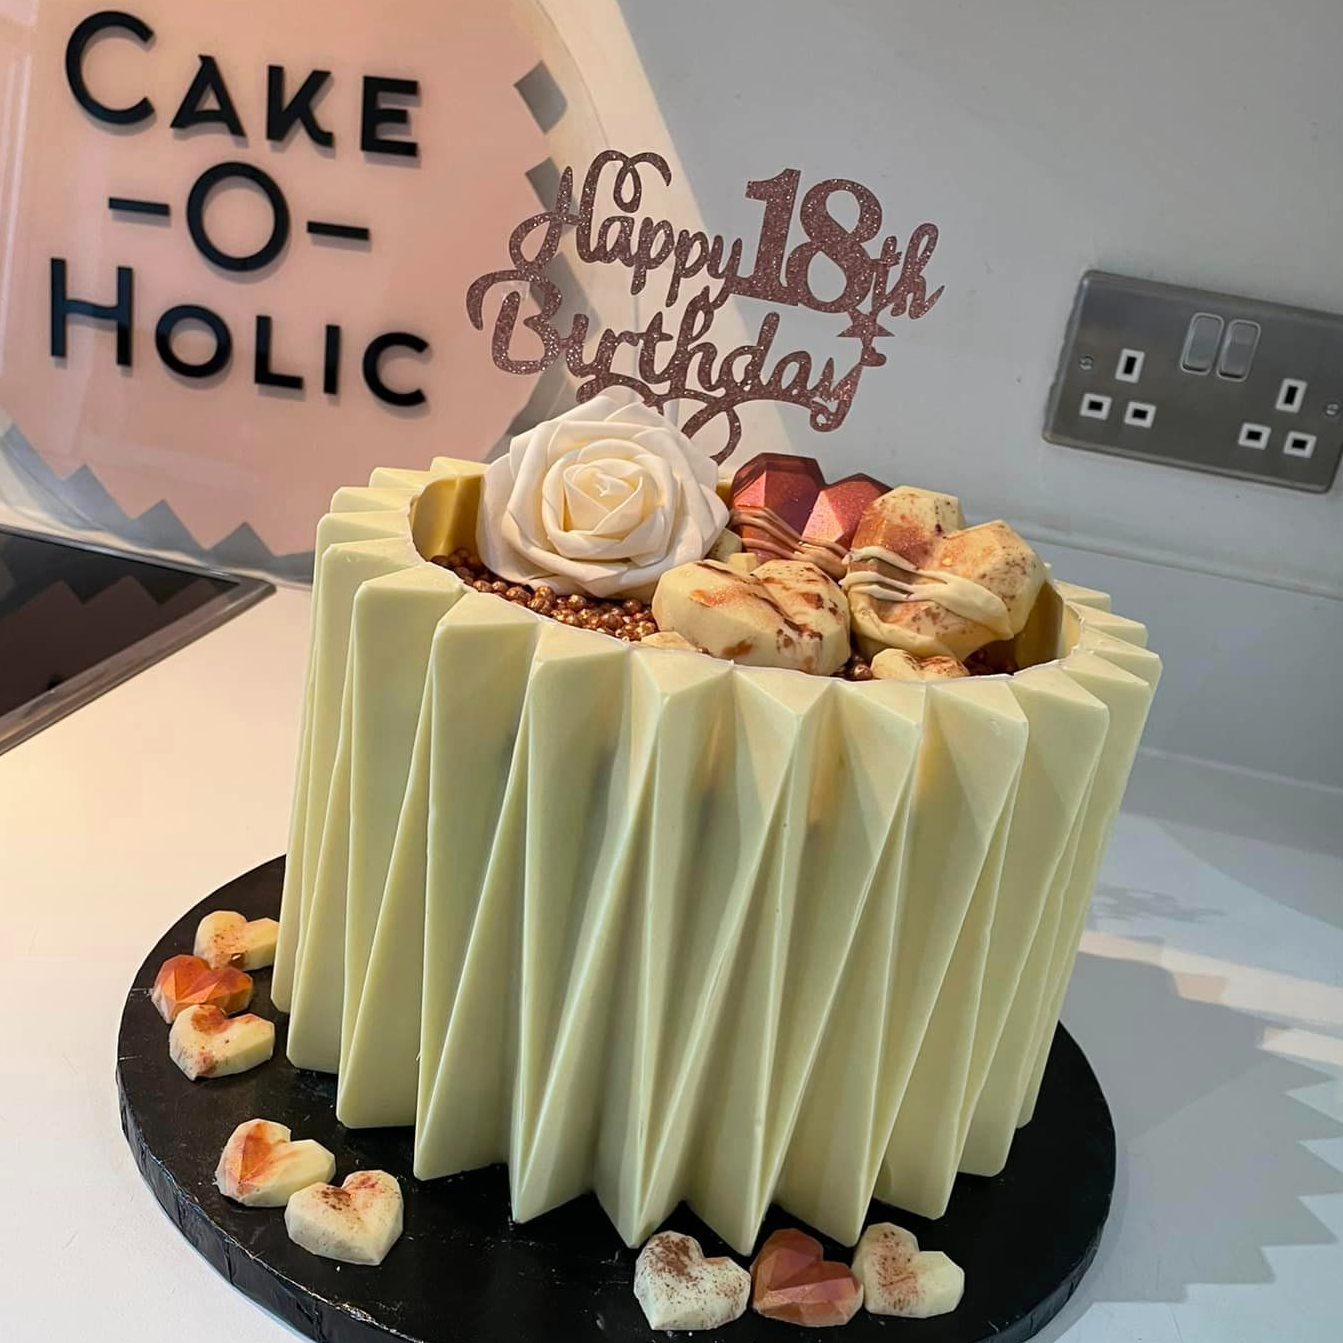 Cake o' holic, Samana - Restaurant reviews